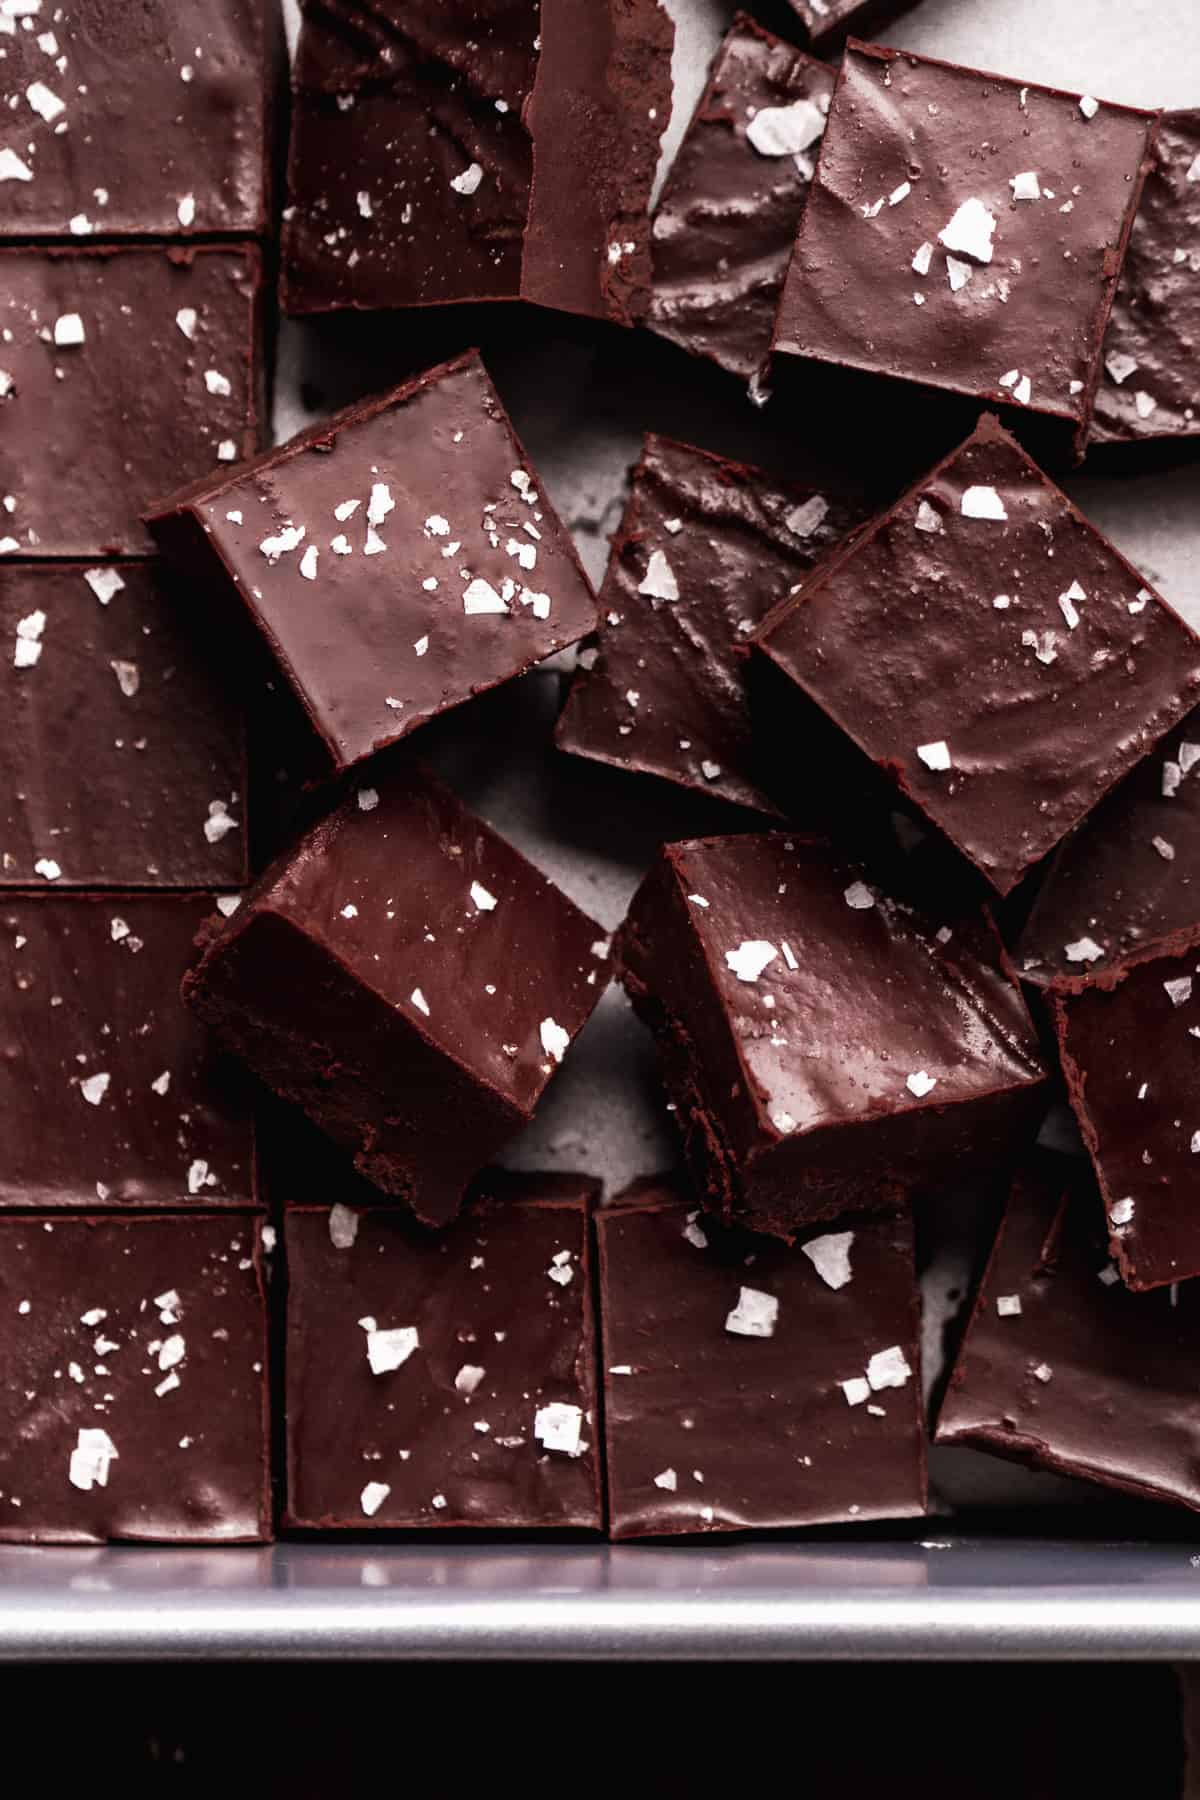 Vegan dark chocolate fudge scattered in a pan.